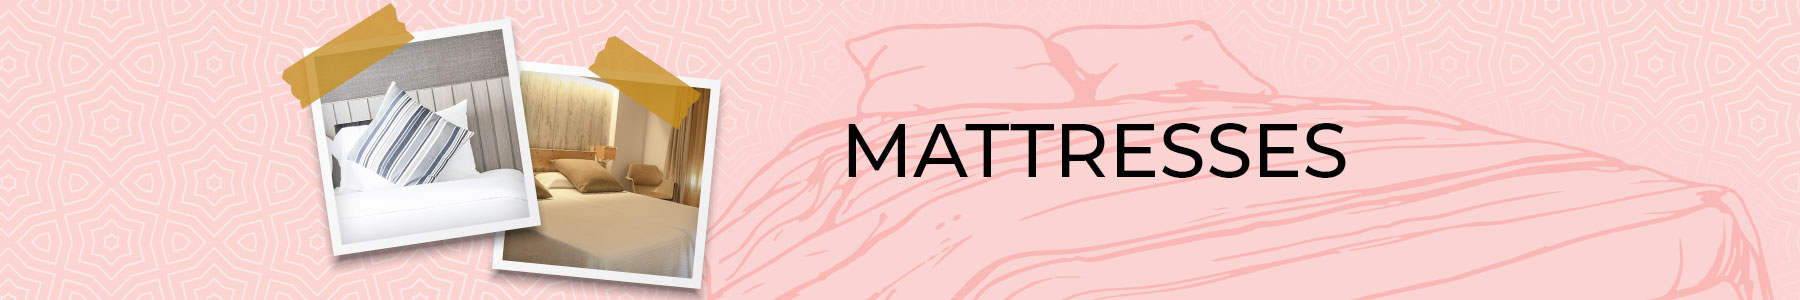 mattress banner